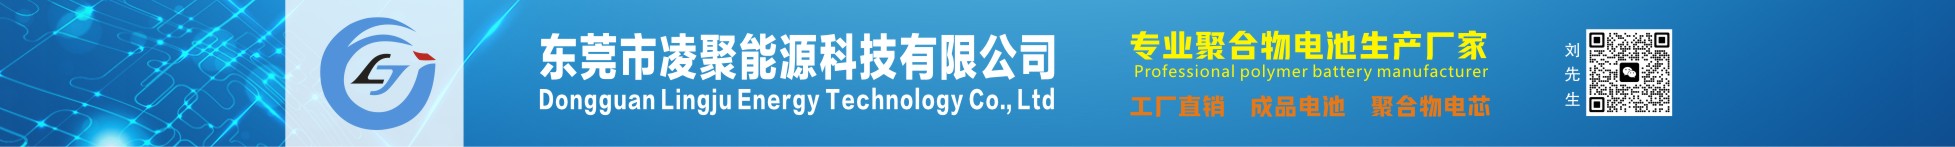 东莞市凌聚能源科技有限公司